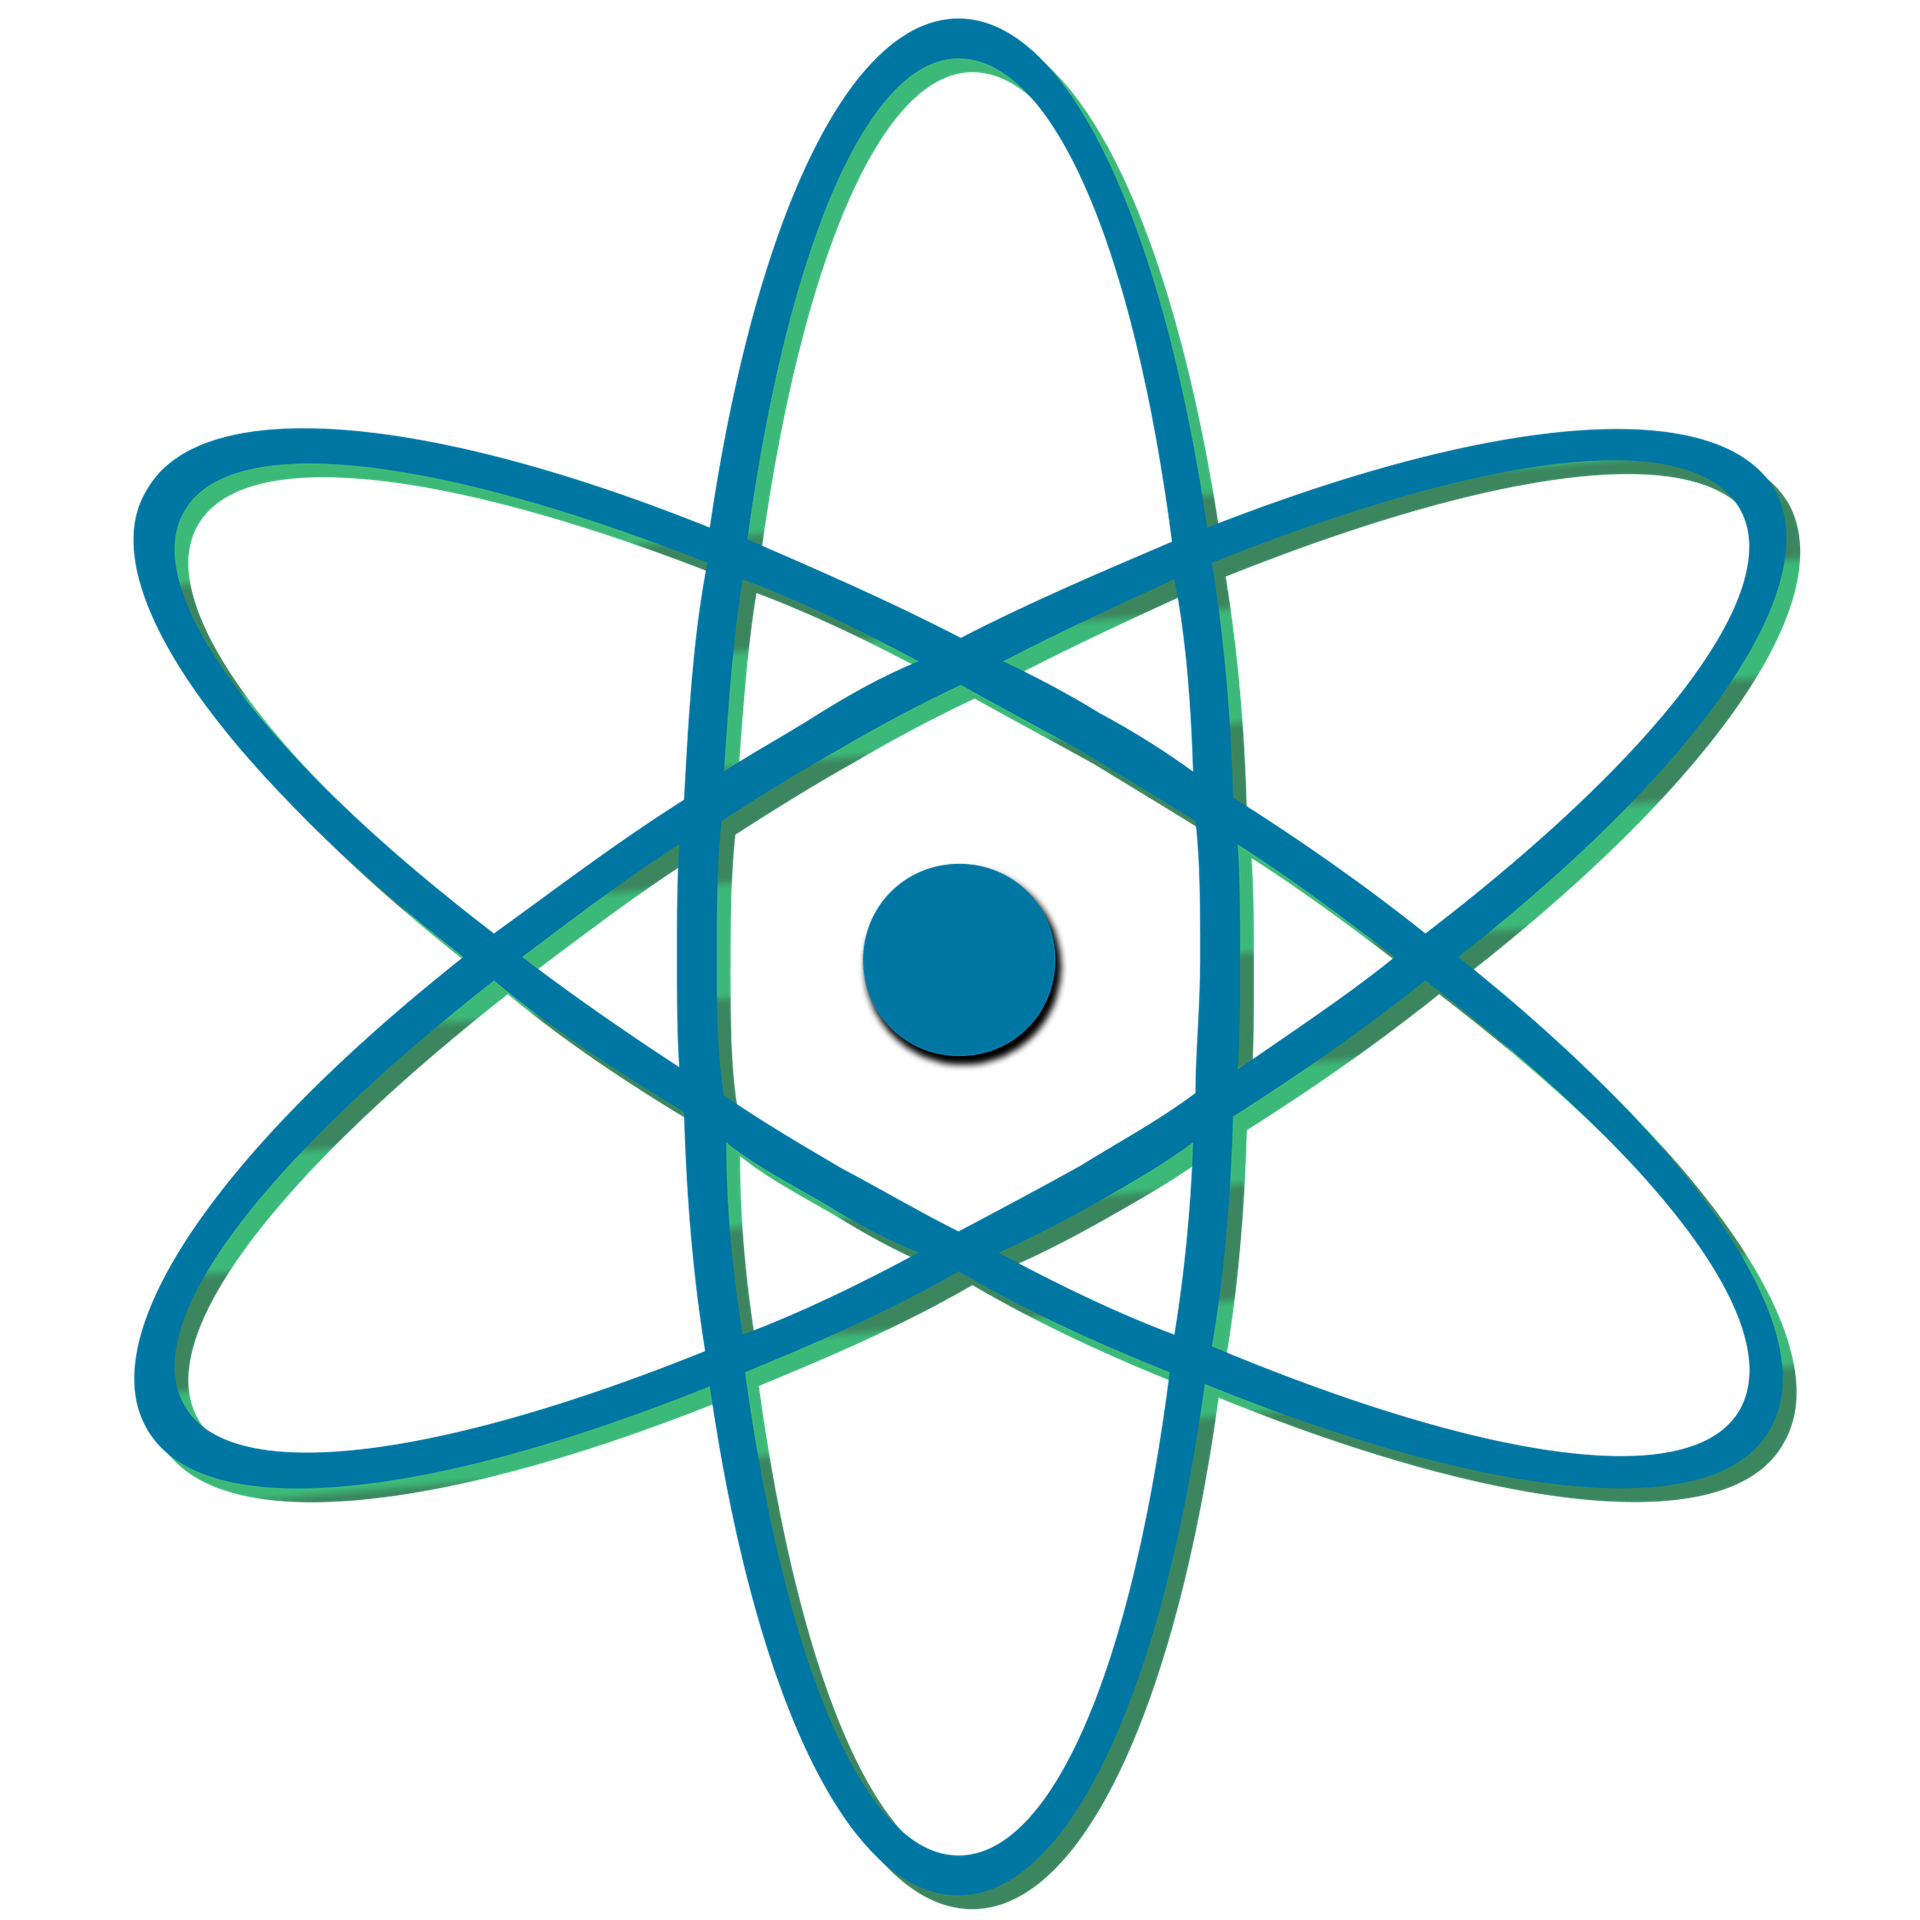 atomic-symbol-1494506_1920.png